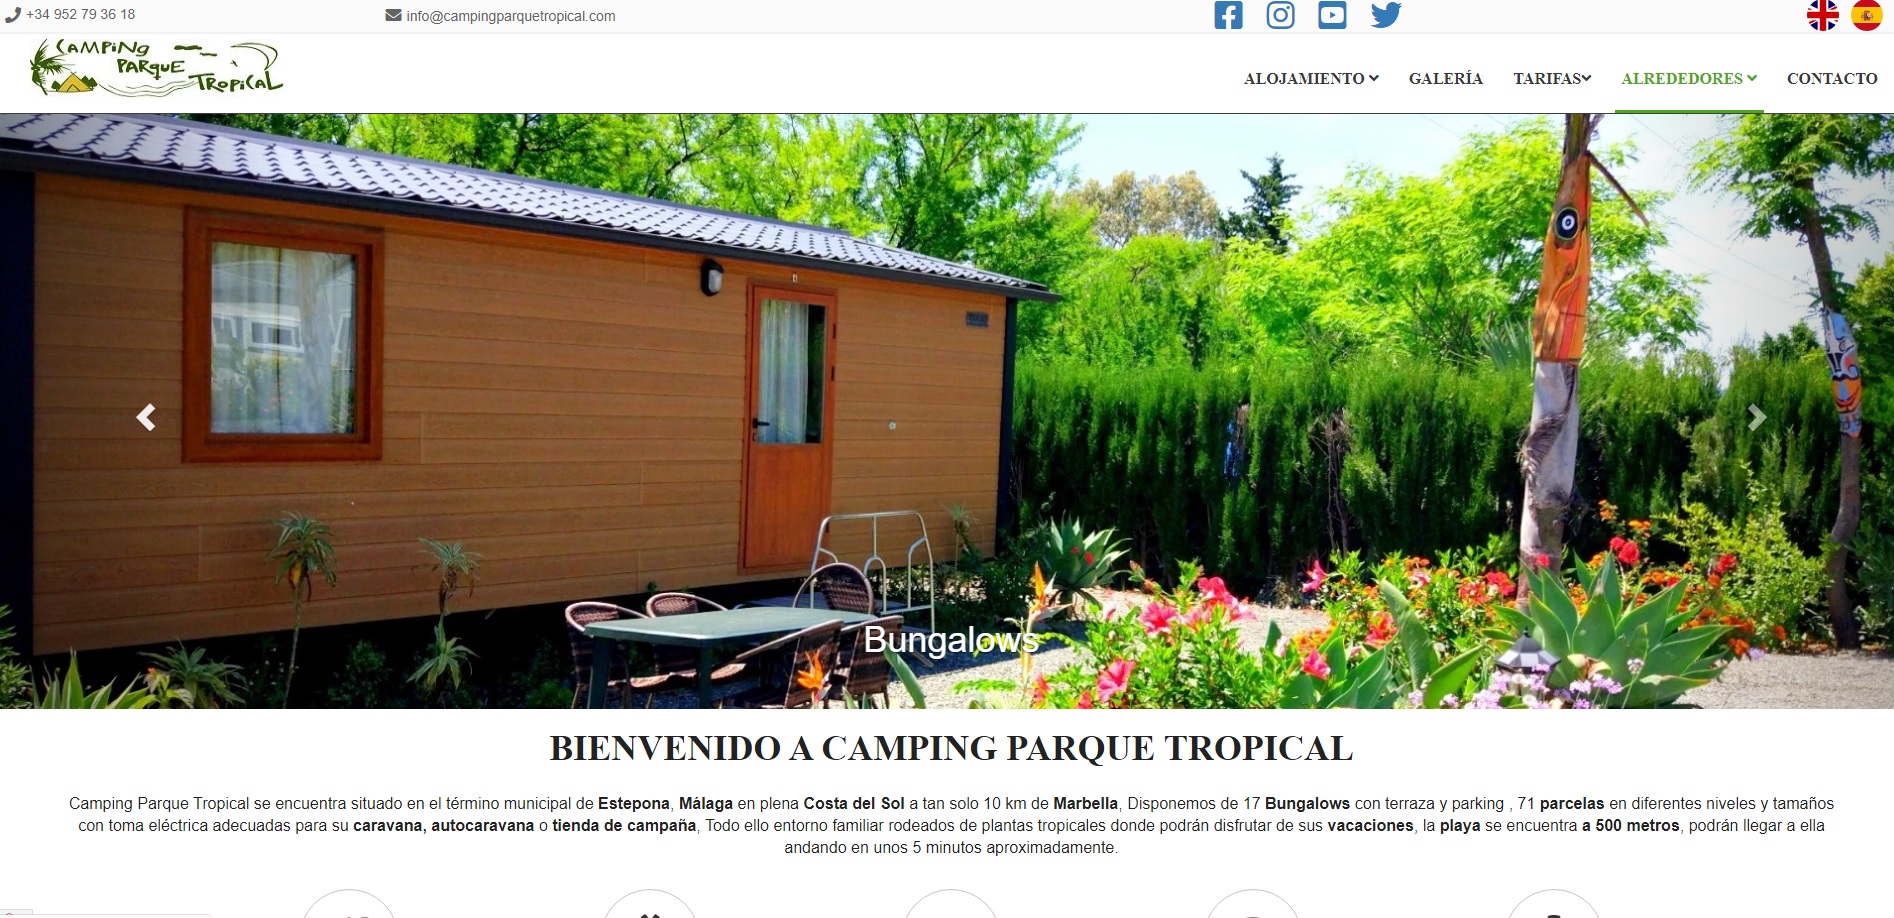 (c) Campingparquetropical.com